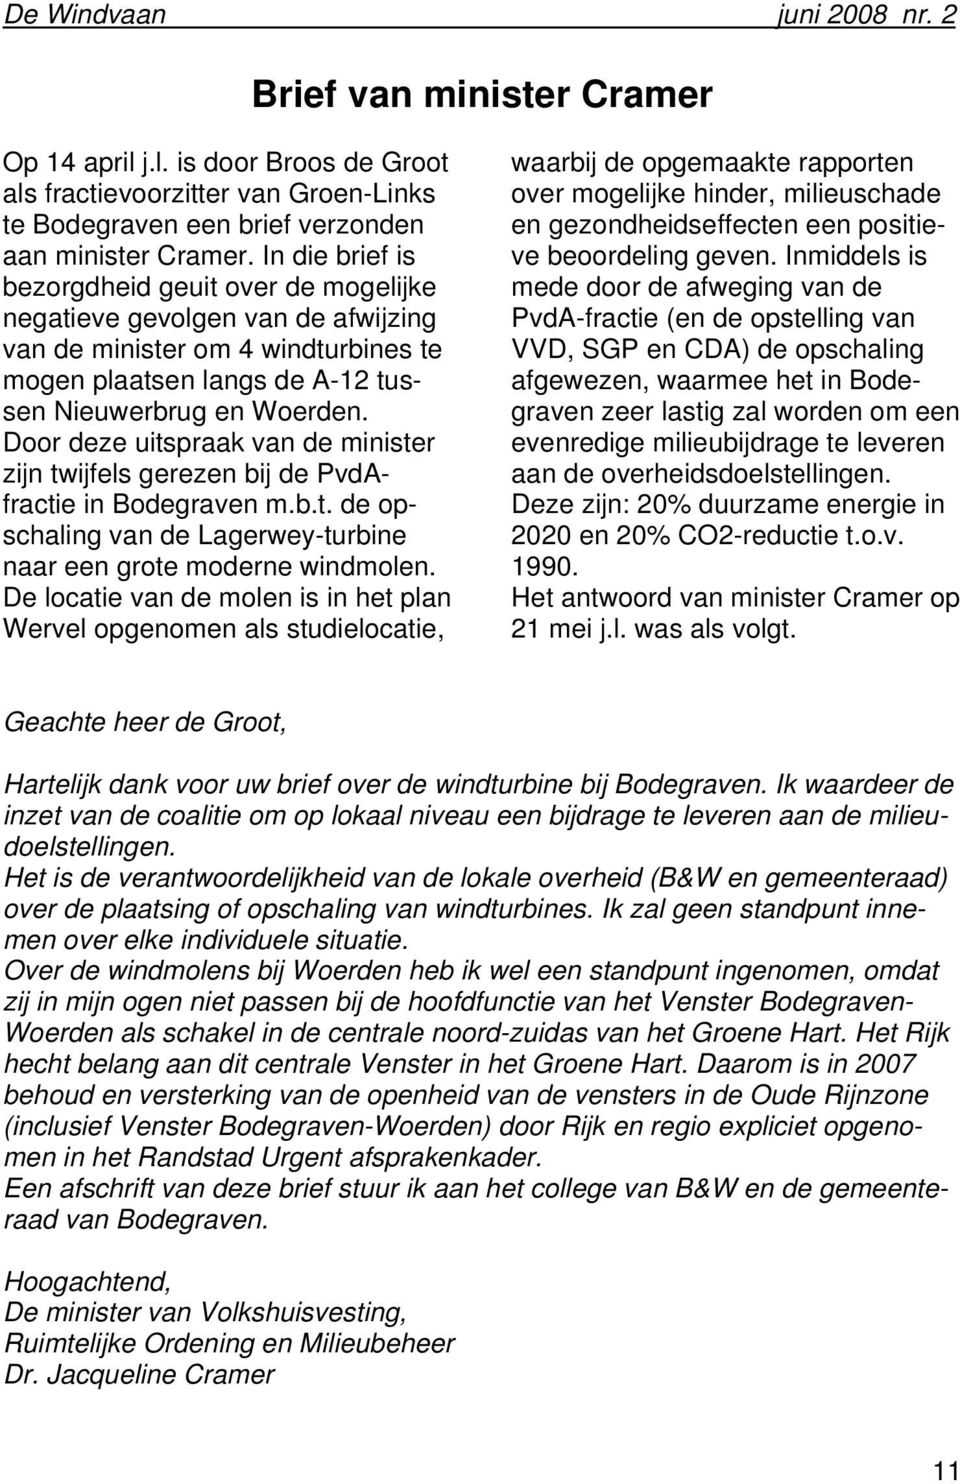 Door deze uitspraak van de minister zijn twijfels gerezen bij de PvdAfractie in Bodegraven m.b.t. de opschaling van de Lagerwey-turbine naar een grote moderne windmolen.